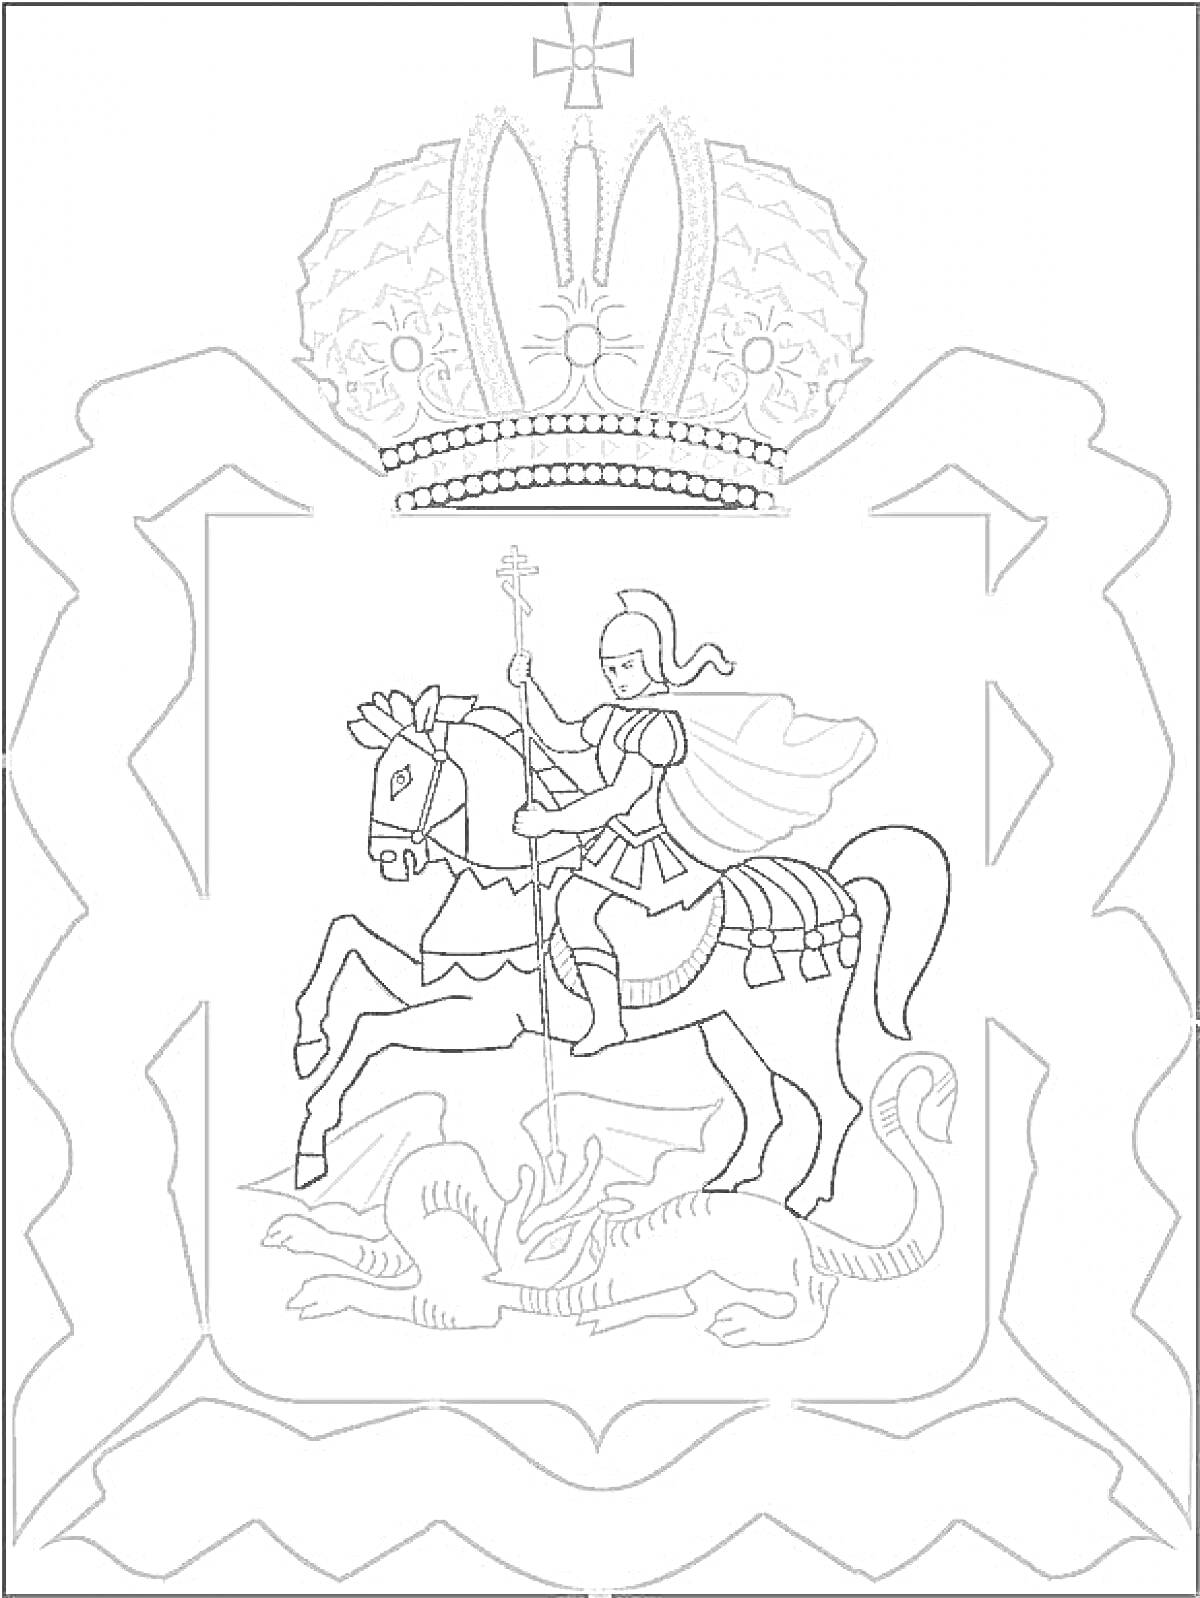 Герб России с изображением Георгия Победоносца, поражающего дракона, и императорской короны наверху.